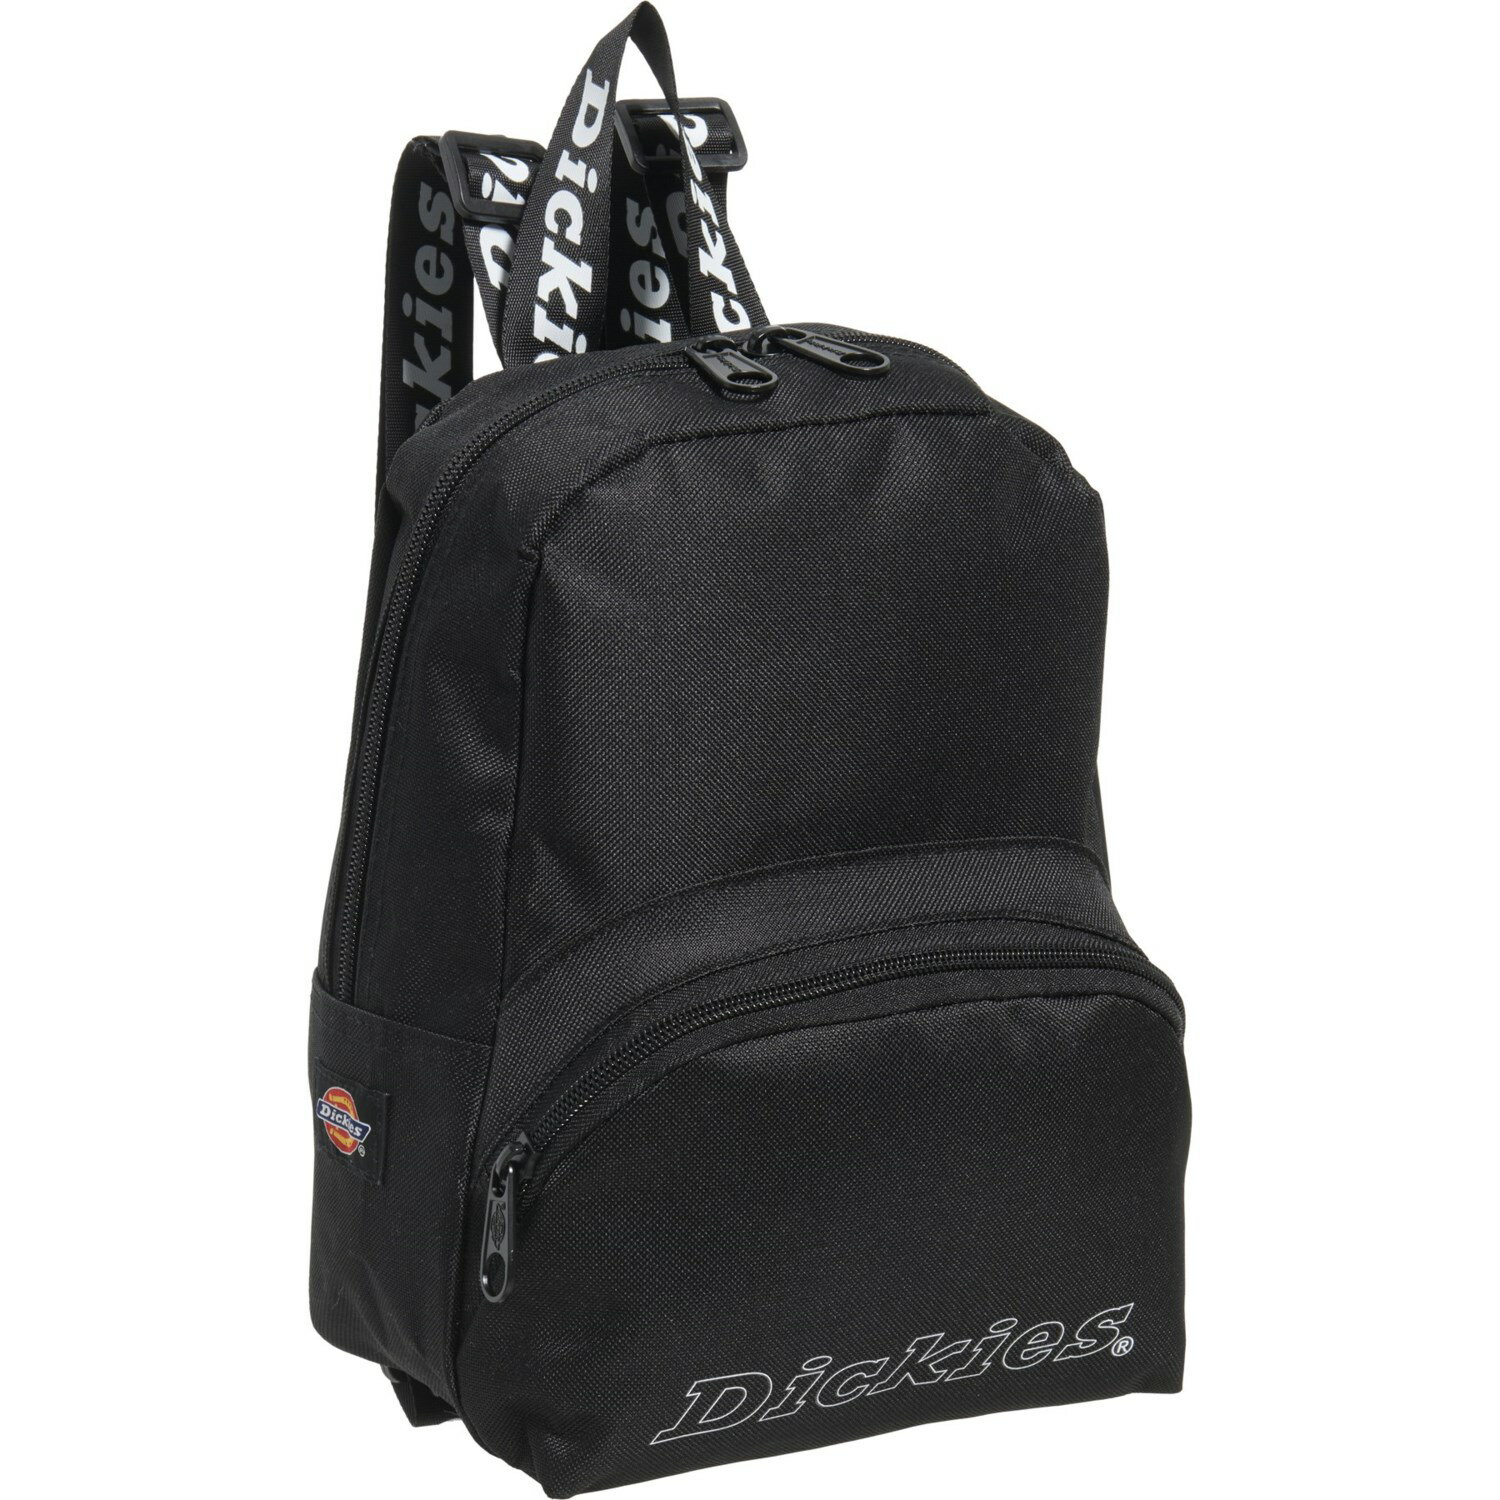 ディッキーズ リュック メンズ (取寄) ディッキーズ レディース ミニ ロゴ バックパック Dickies women Mini Logo Backpack (For Women) Black